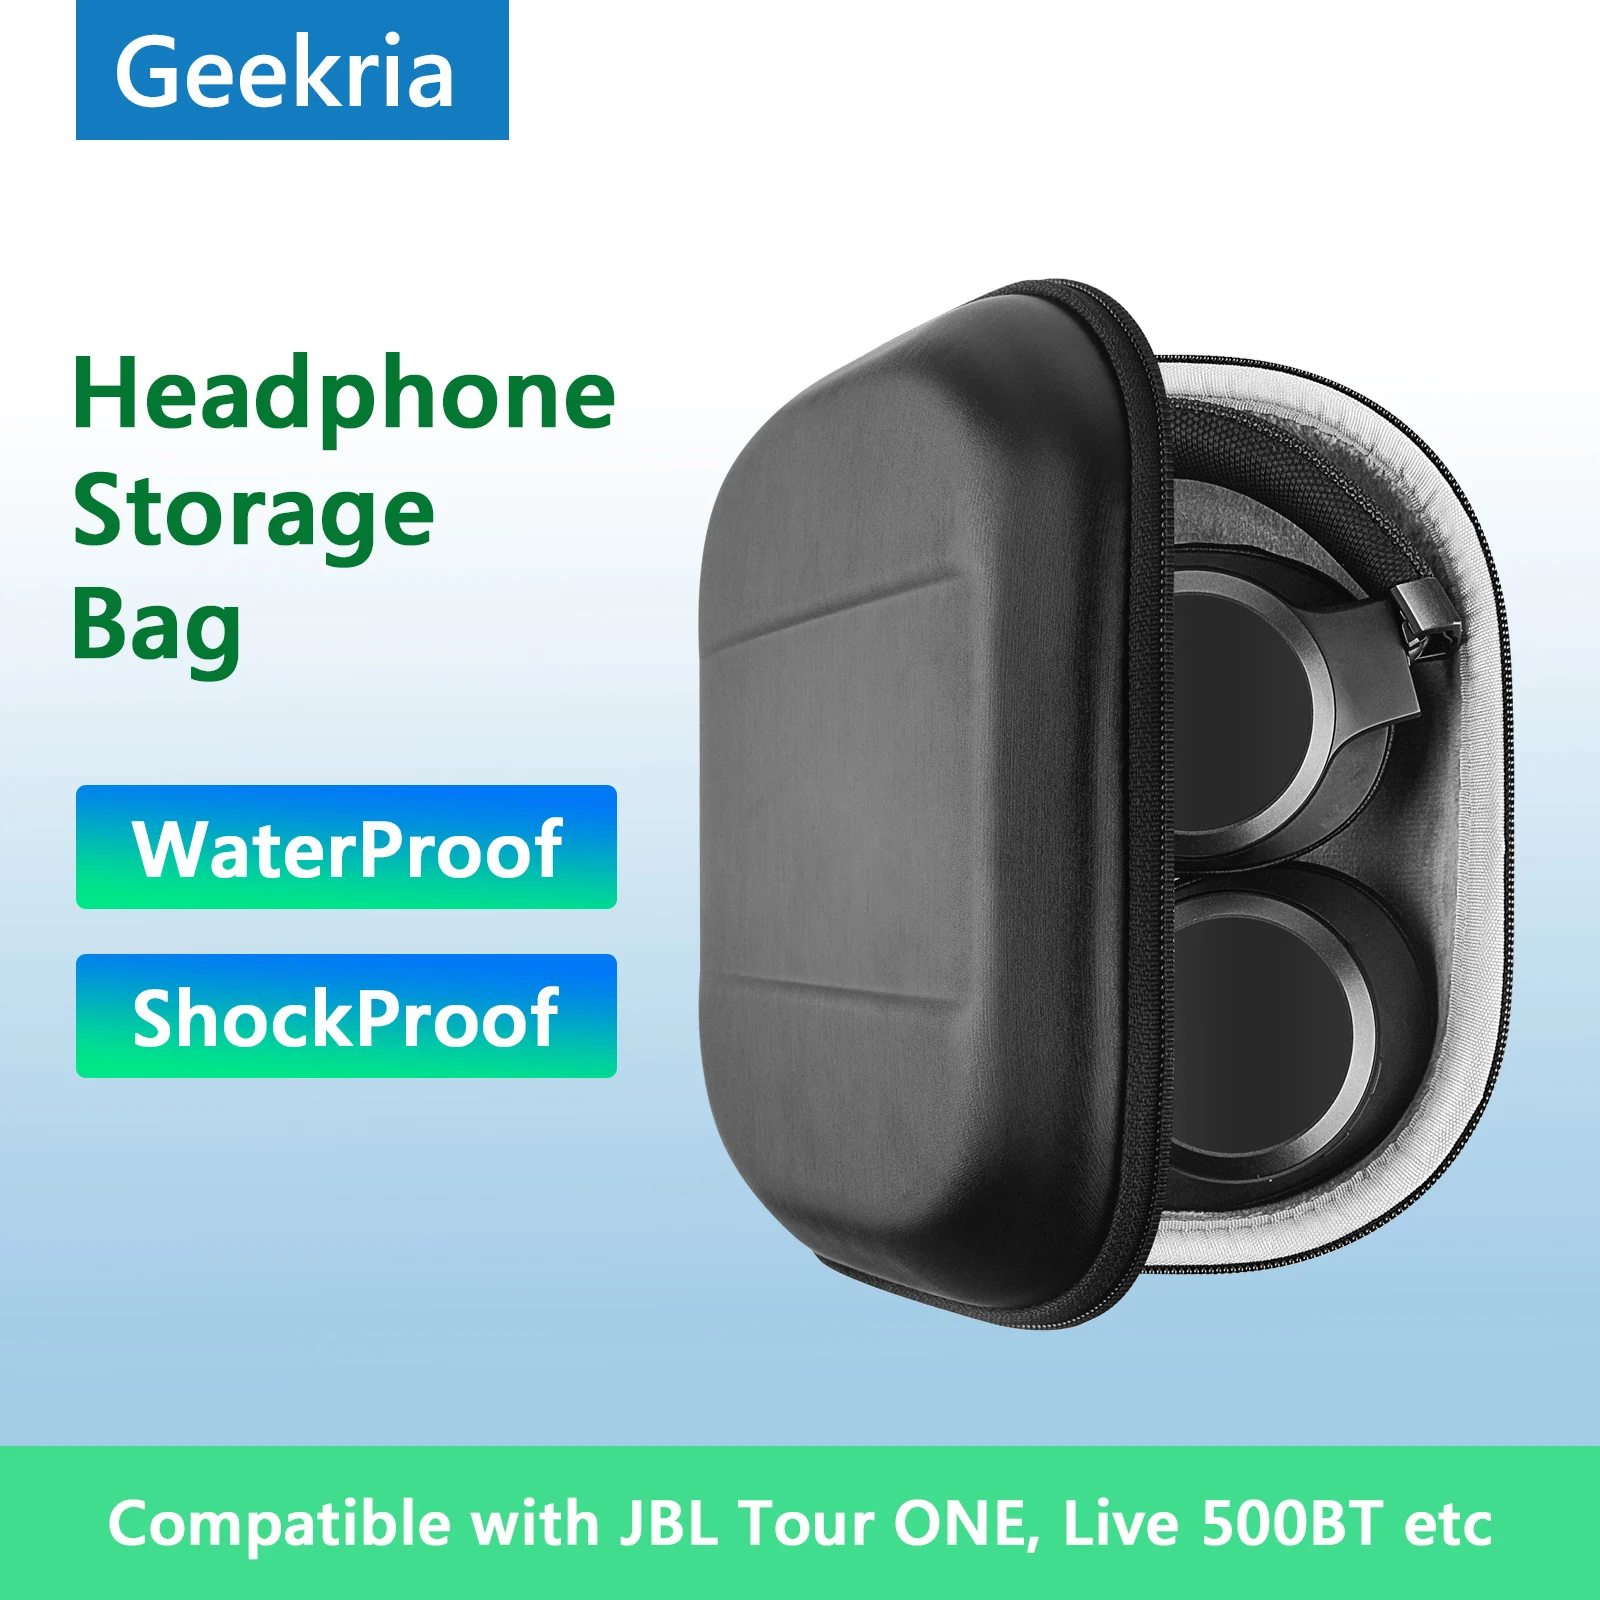 

Чехол для наушников Geekria чехол для JBL Tour ONE Live 500BT 650 BTNC Tune750 портативные наушники Bluetooth гарнитура сумка для хранения